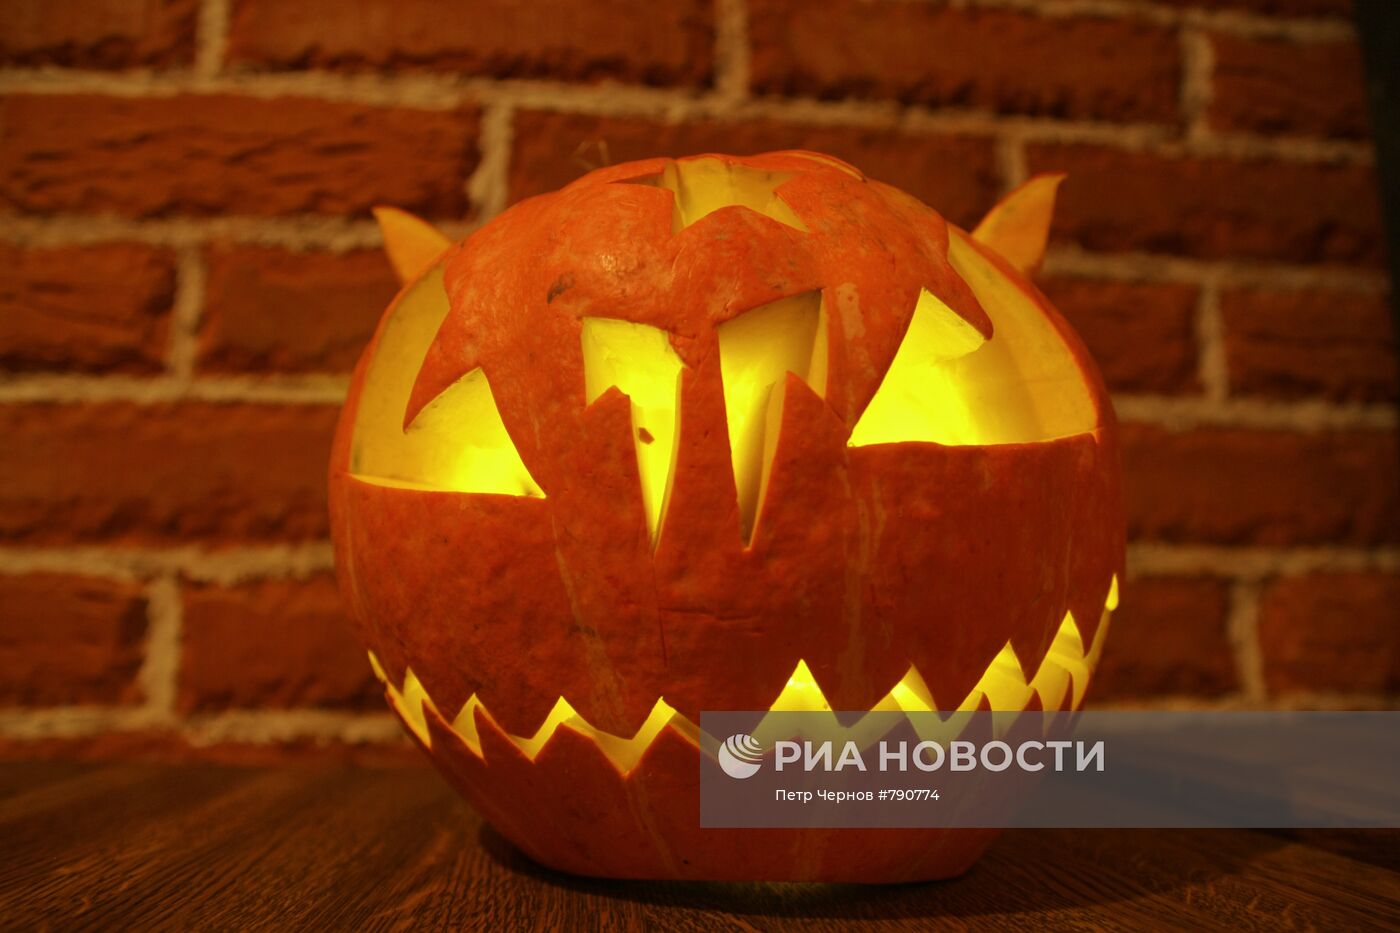 Специальное меню к празднованию Хэллоуина в московском ресторане